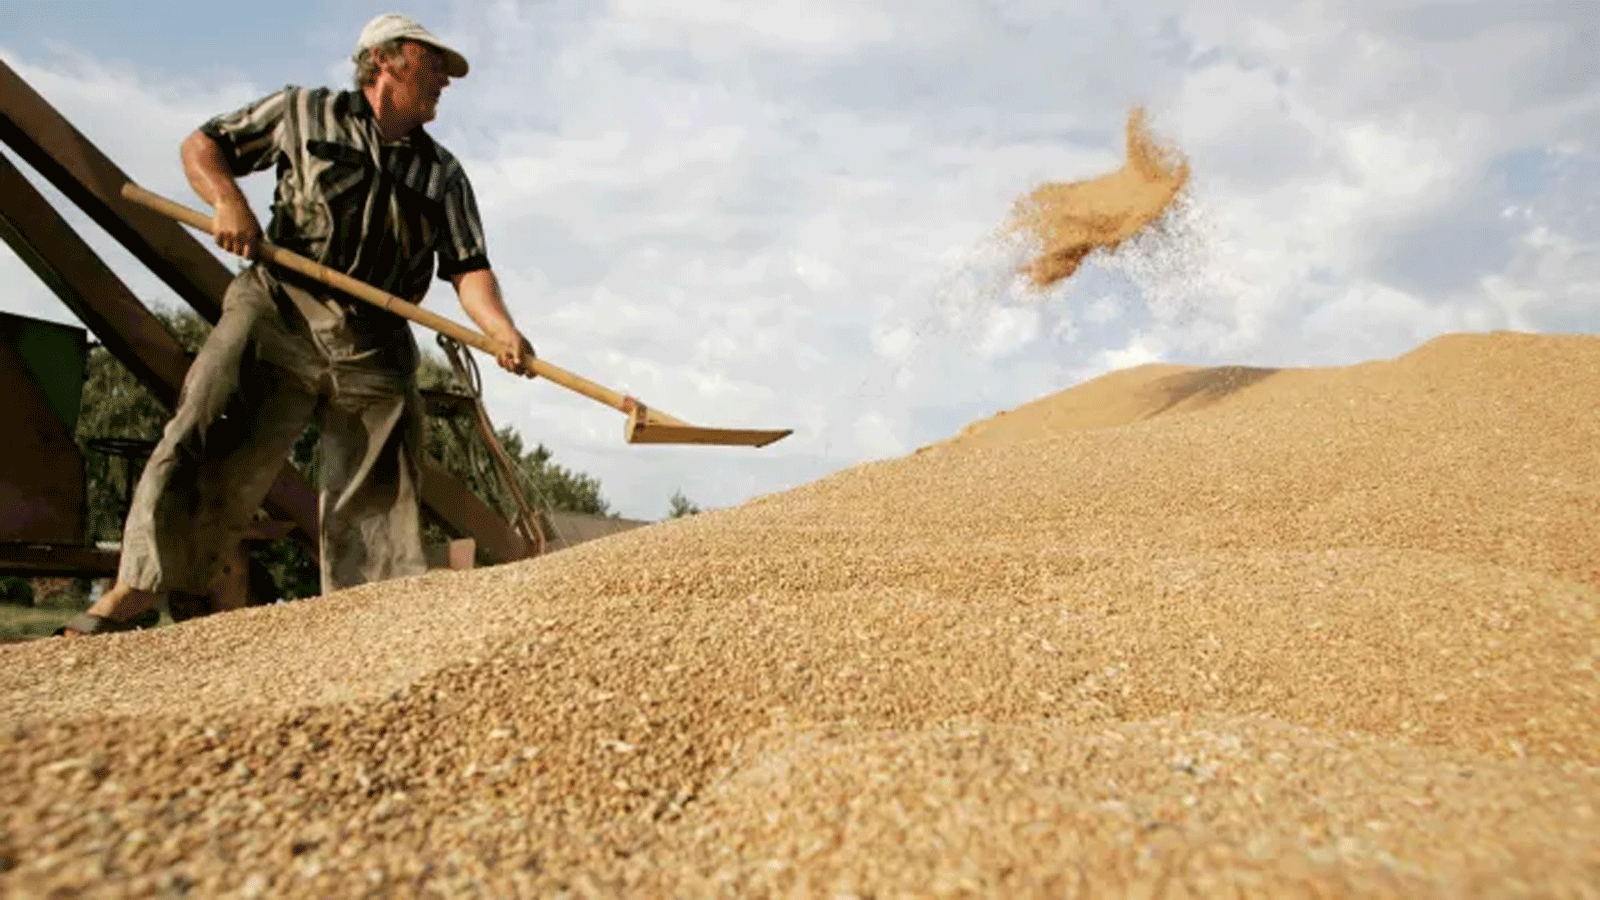 أوكرانيا هي رابع أكبر مصدر للقمح في العالم. صورة تظهر آلة حصادة تقوم بتفريغ حبوب القمح في حقل بالقرب من قرية كراسن، في منطقة تشيرنيهيف، على بعد 120 كم شمال كييف، أوكرانيا، في عام 2019.